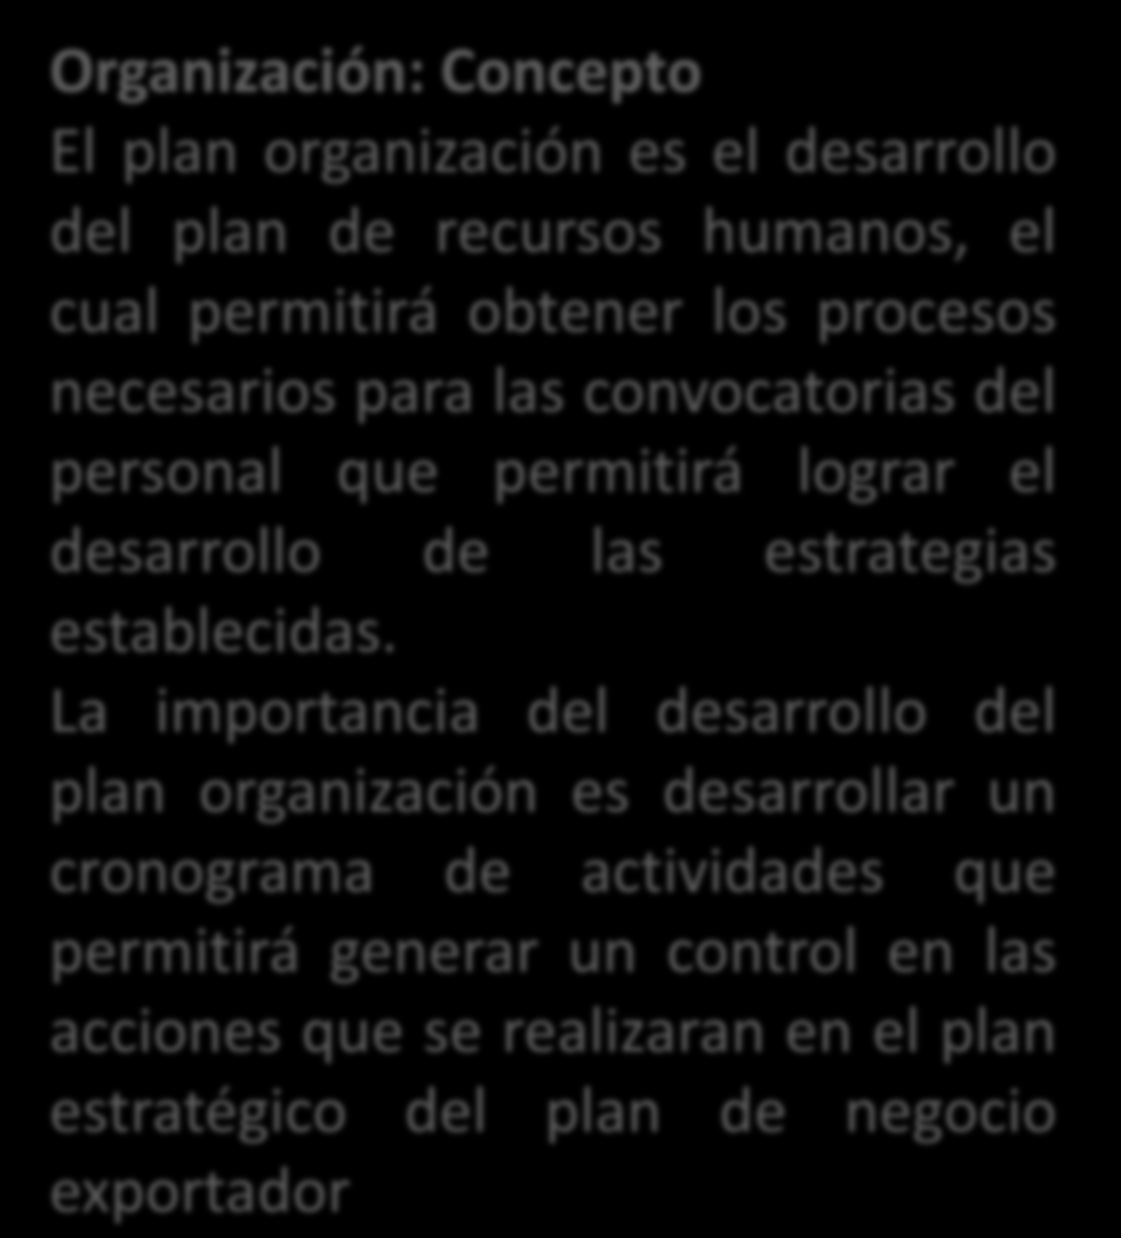 Servicios al Plan exportador Organizacional Organización: Concepto El plan organización es el desarrollo del plan de recursos humanos, el cual permitirá obtener los procesos necesarios para las